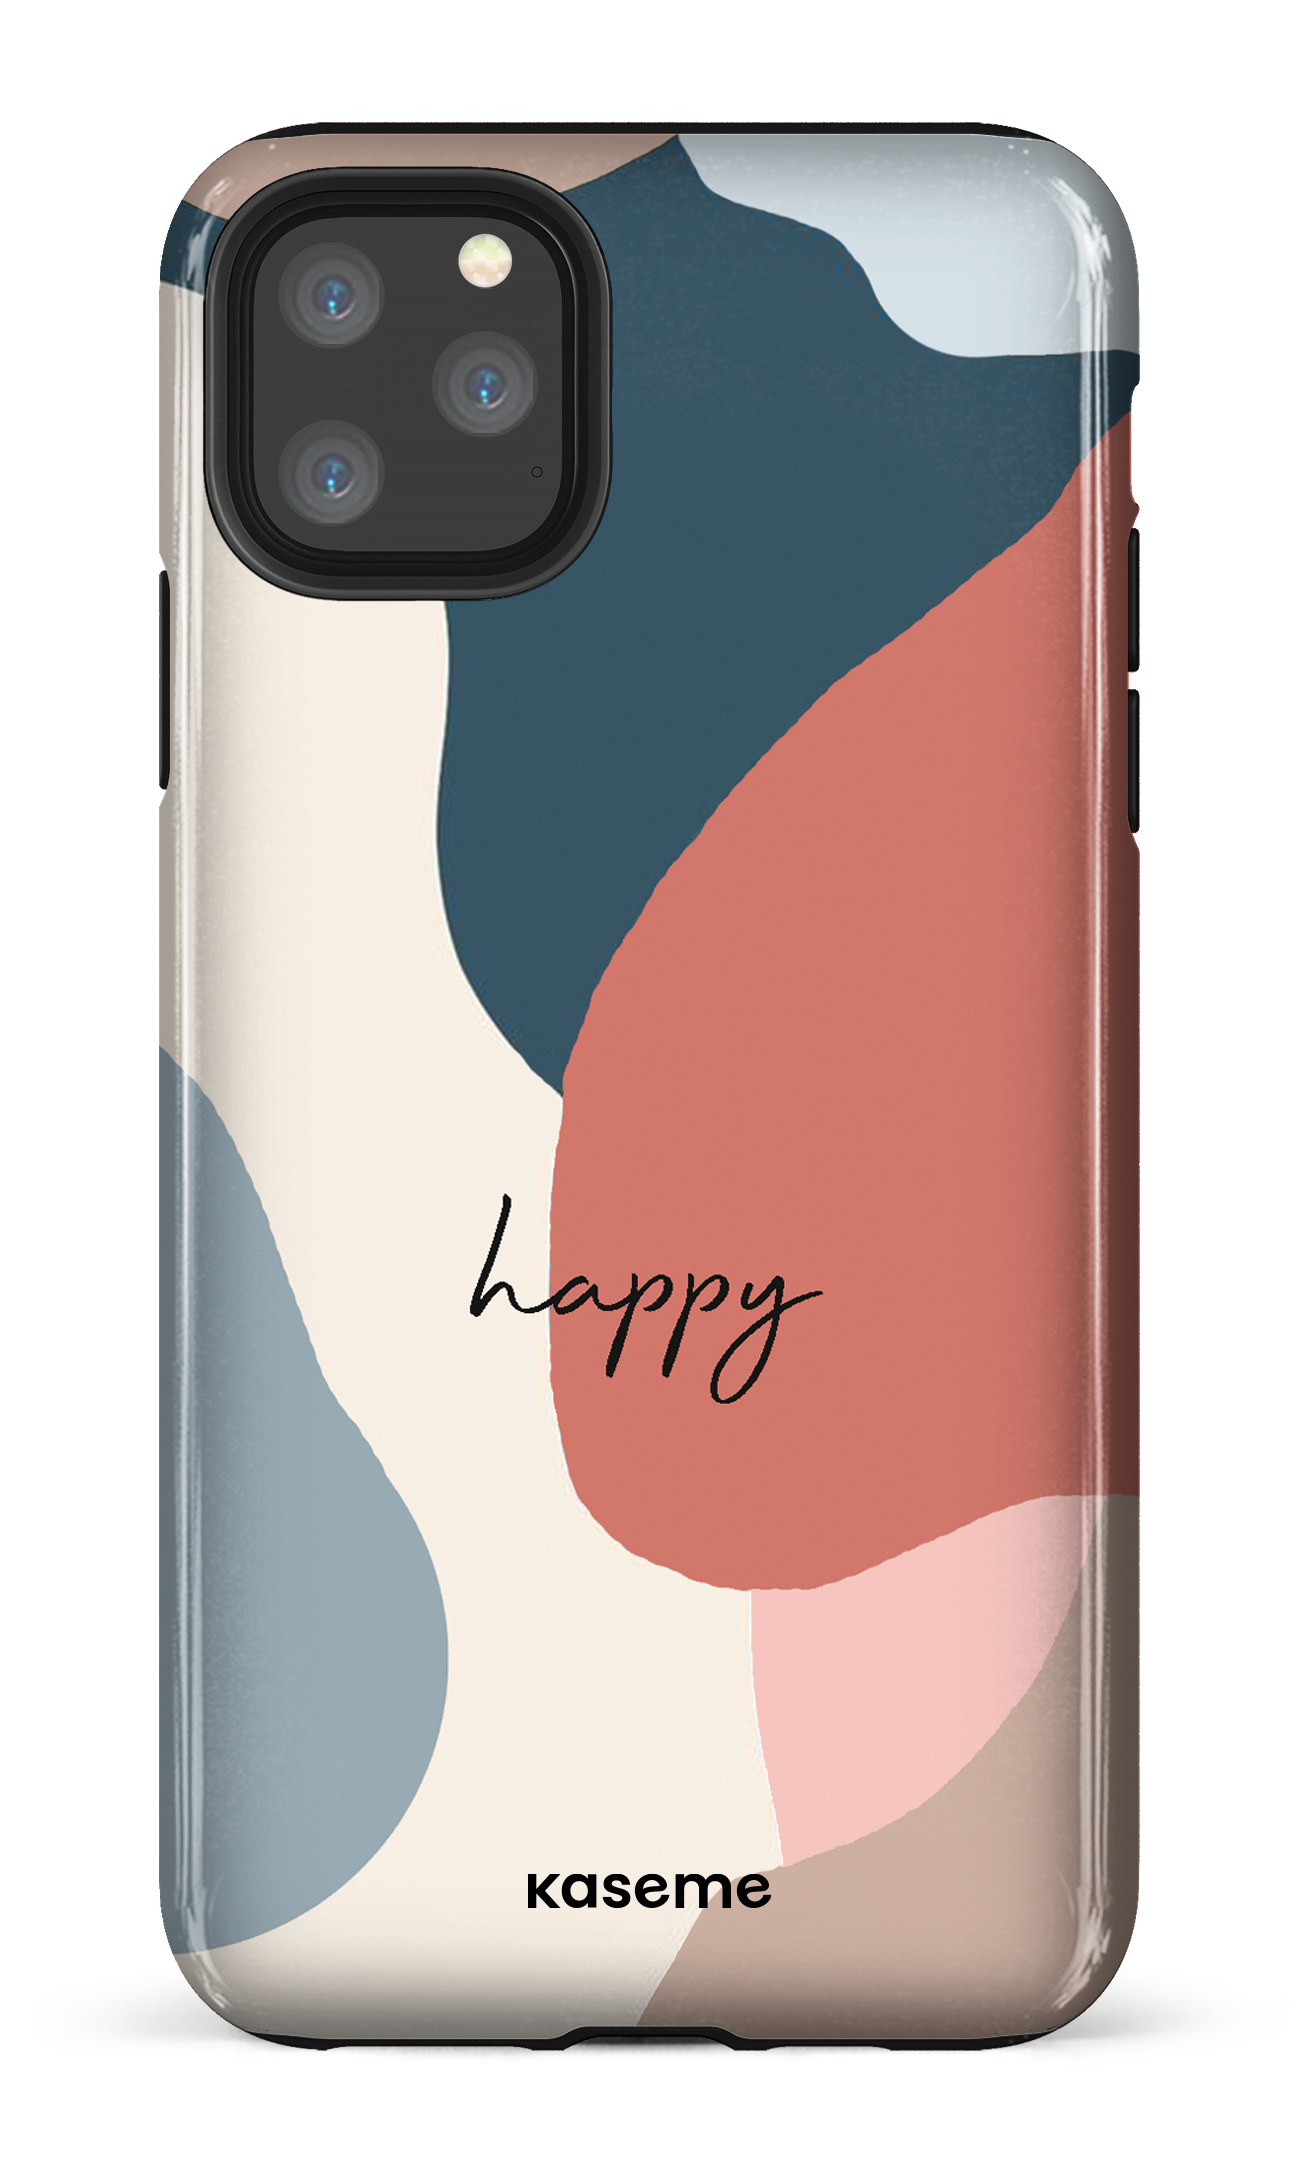 Happy - iPhone 11 Pro Max